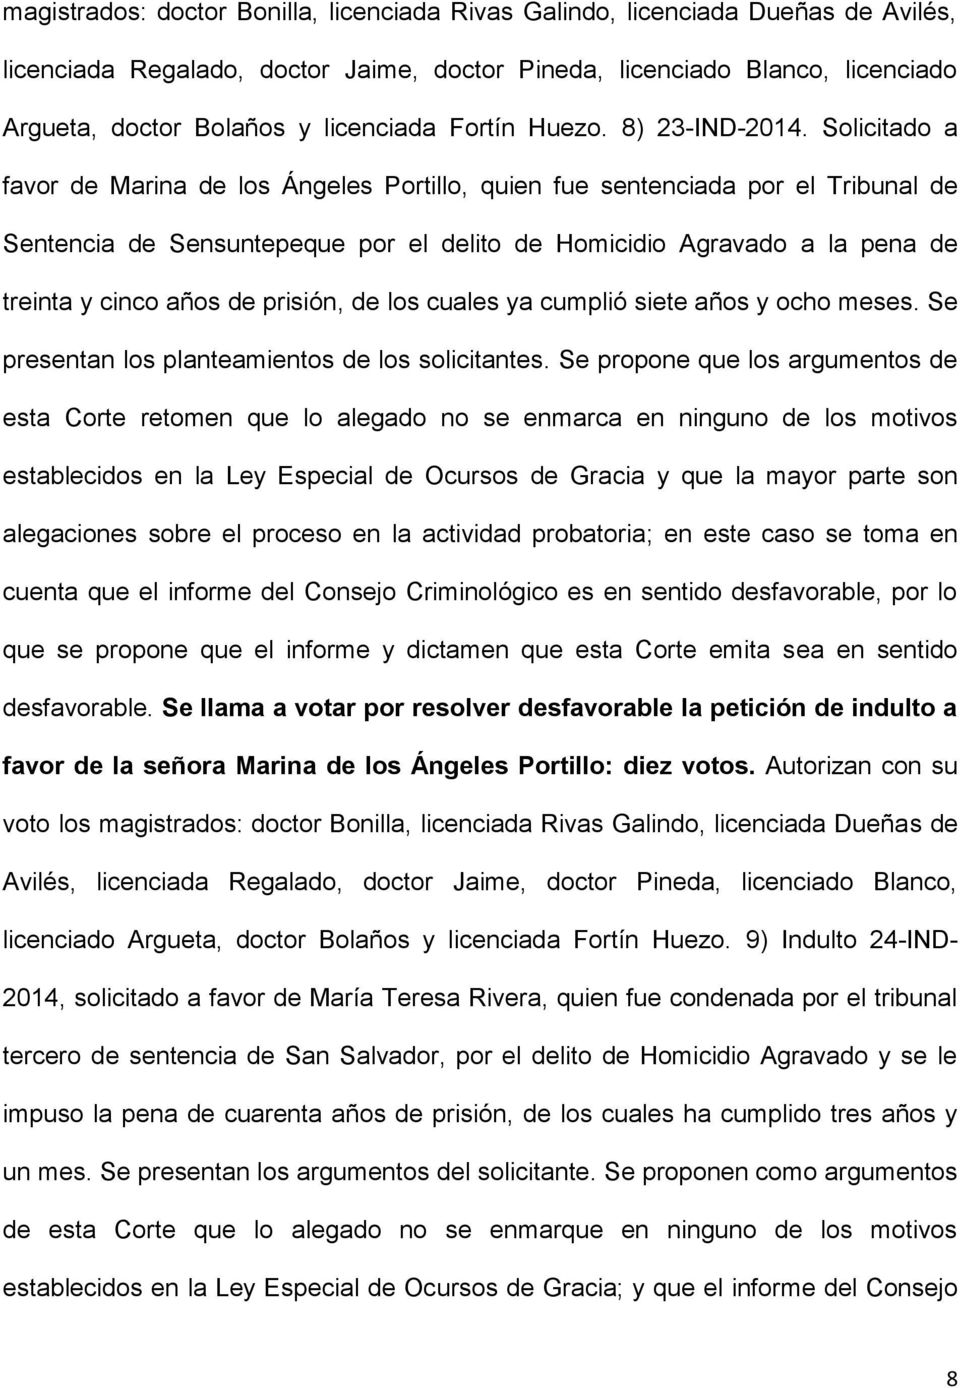 Solicitado a favor de Marina de los Ángeles Portillo, quien fue sentenciada por el Tribunal de Sentencia de Sensuntepeque por el delito de Homicidio Agravado a la pena de treinta y cinco años de